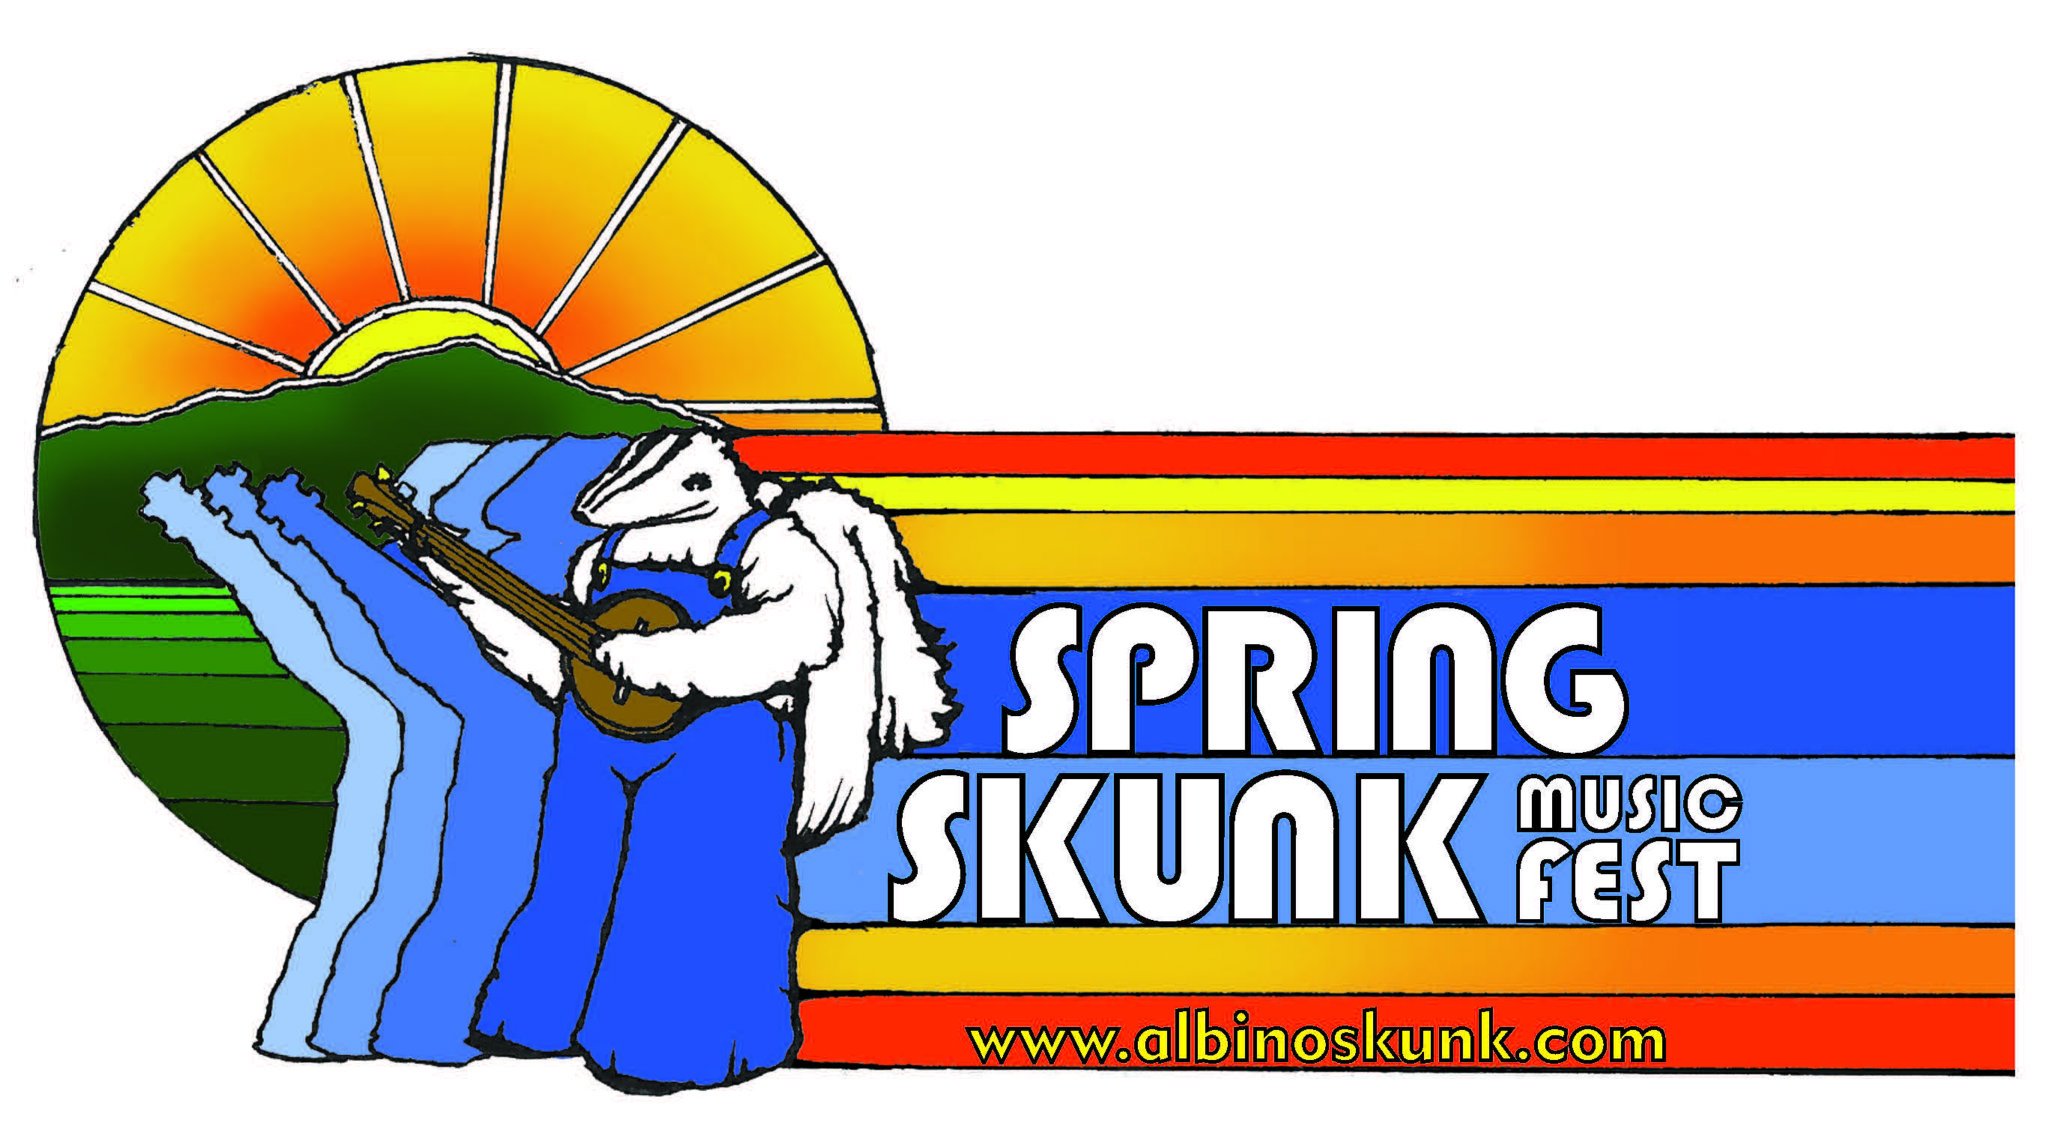 THE ALBINO SKUNK FESTIVAL, GREENVILLE, SC